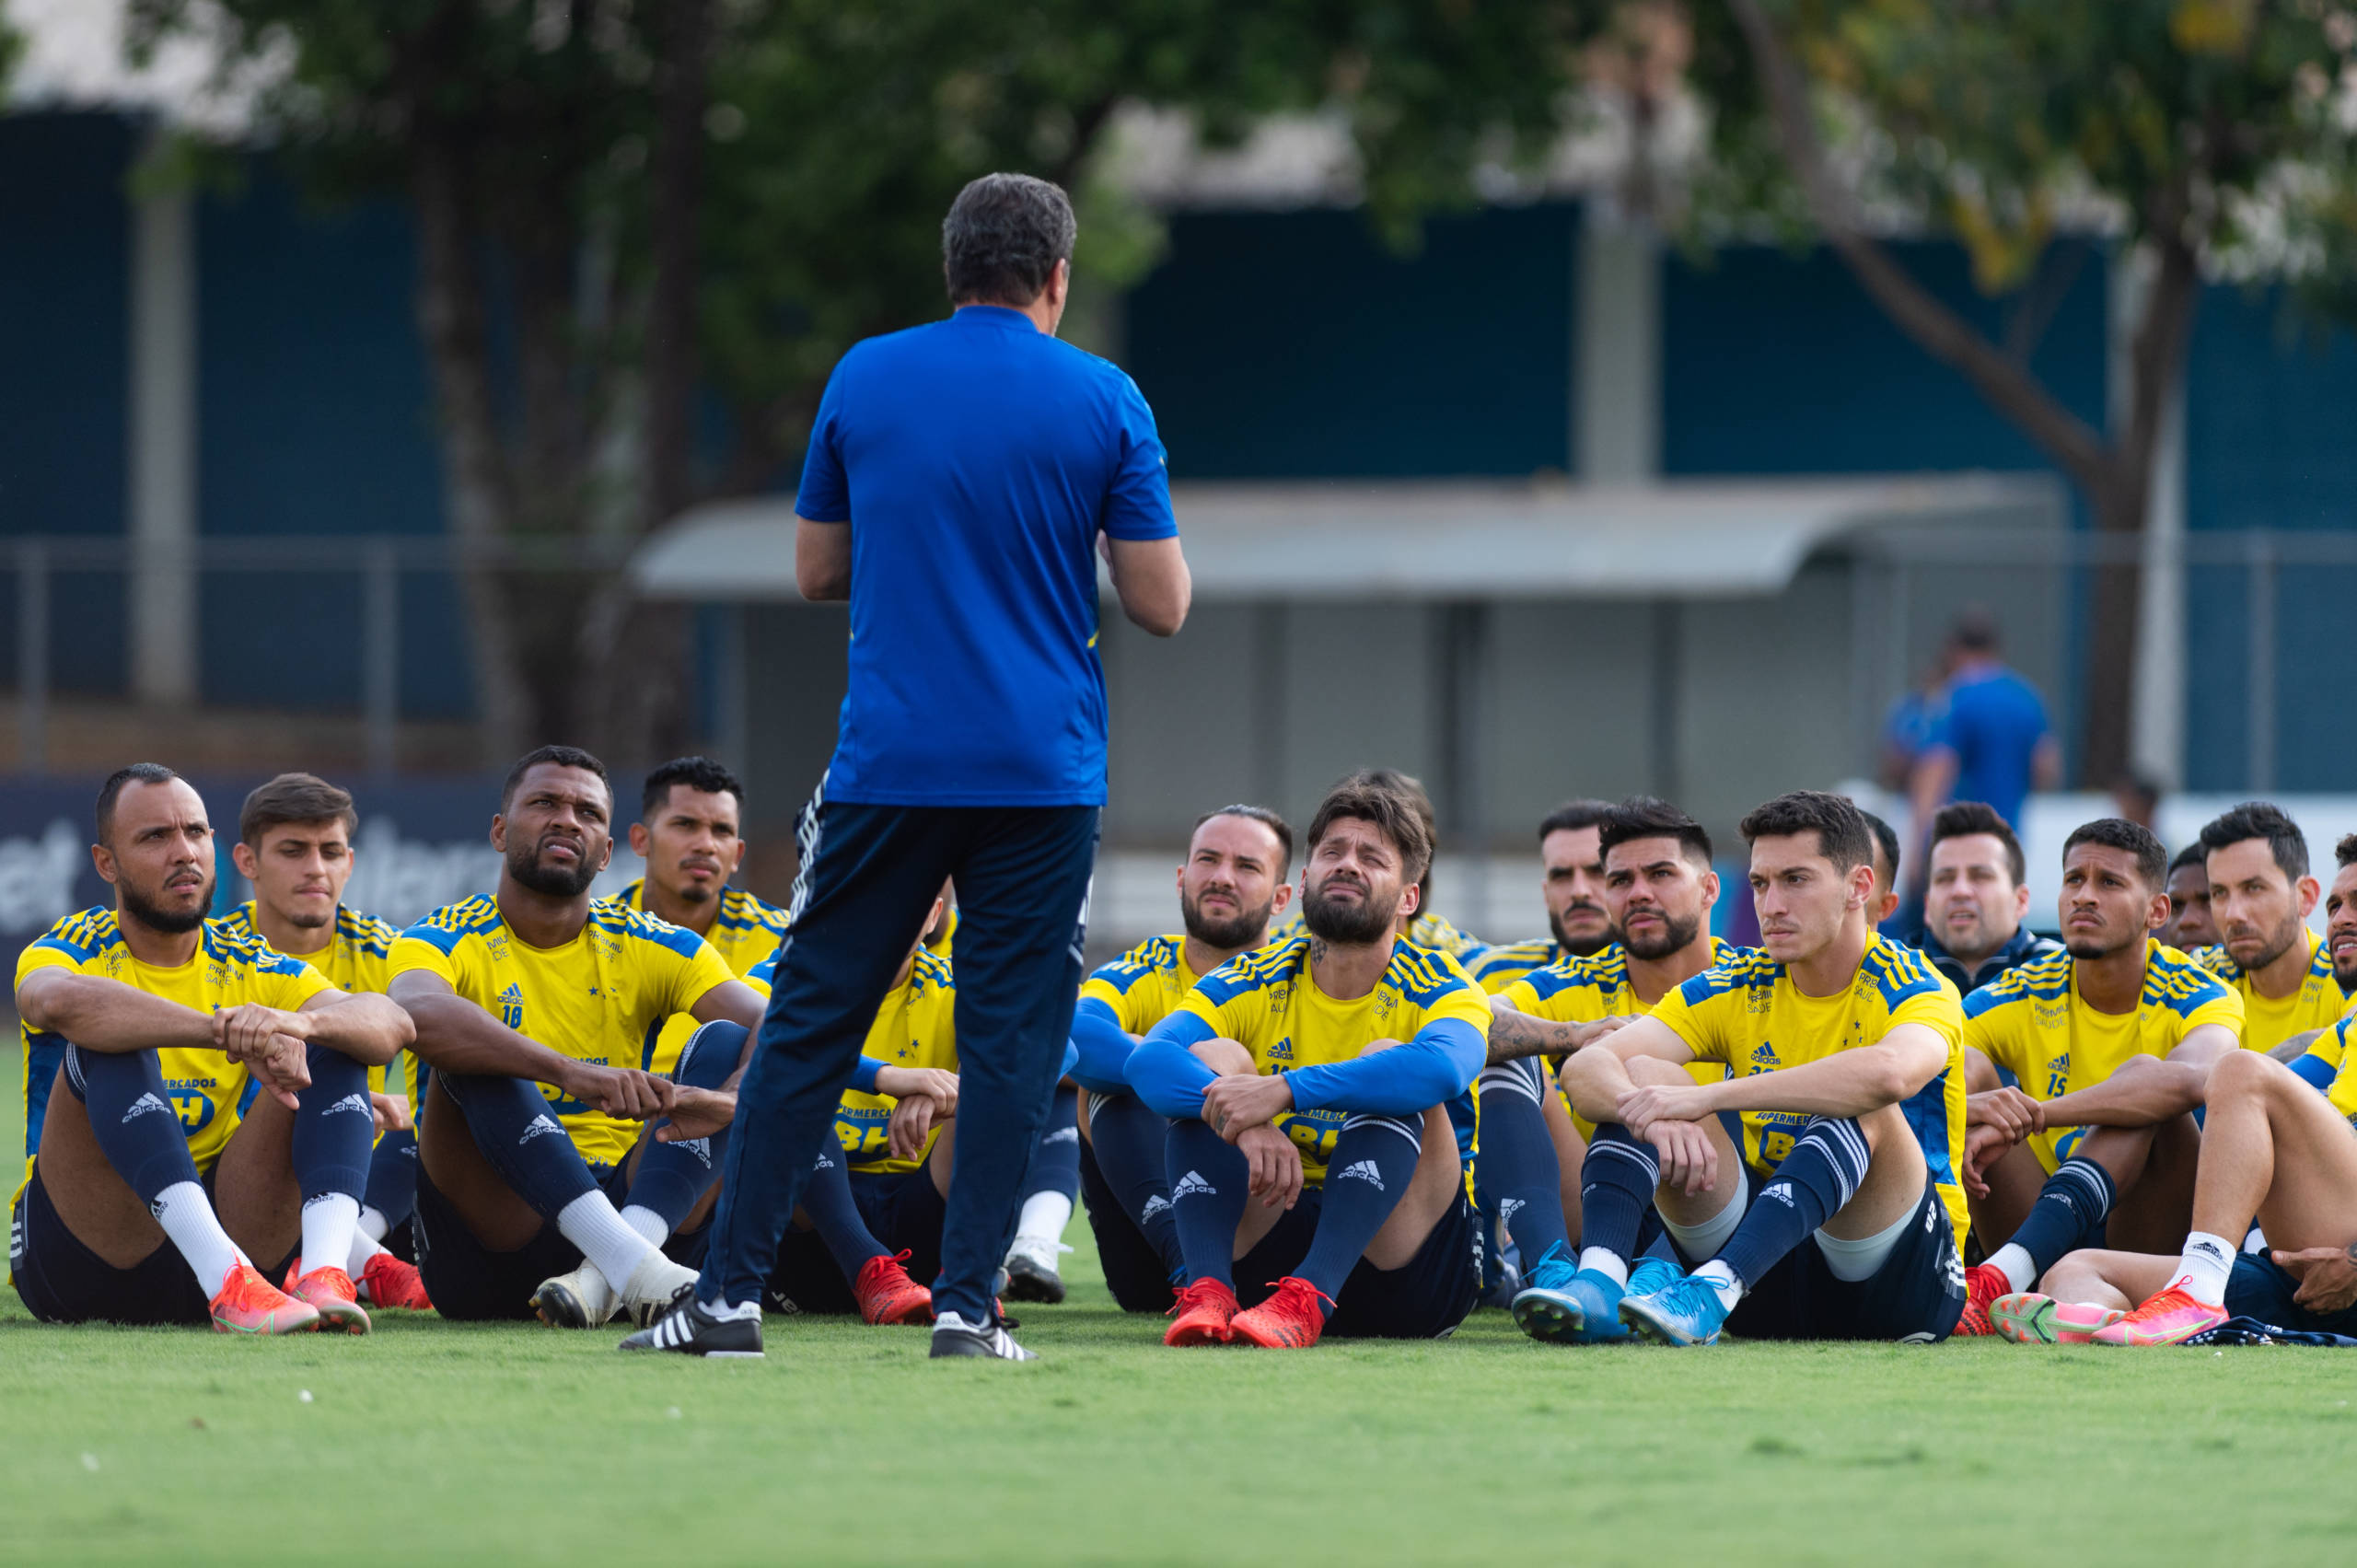 Jogadores de gigante do futebol brasileiro confirmam paralisação dos treinos por causa de salários atrasados